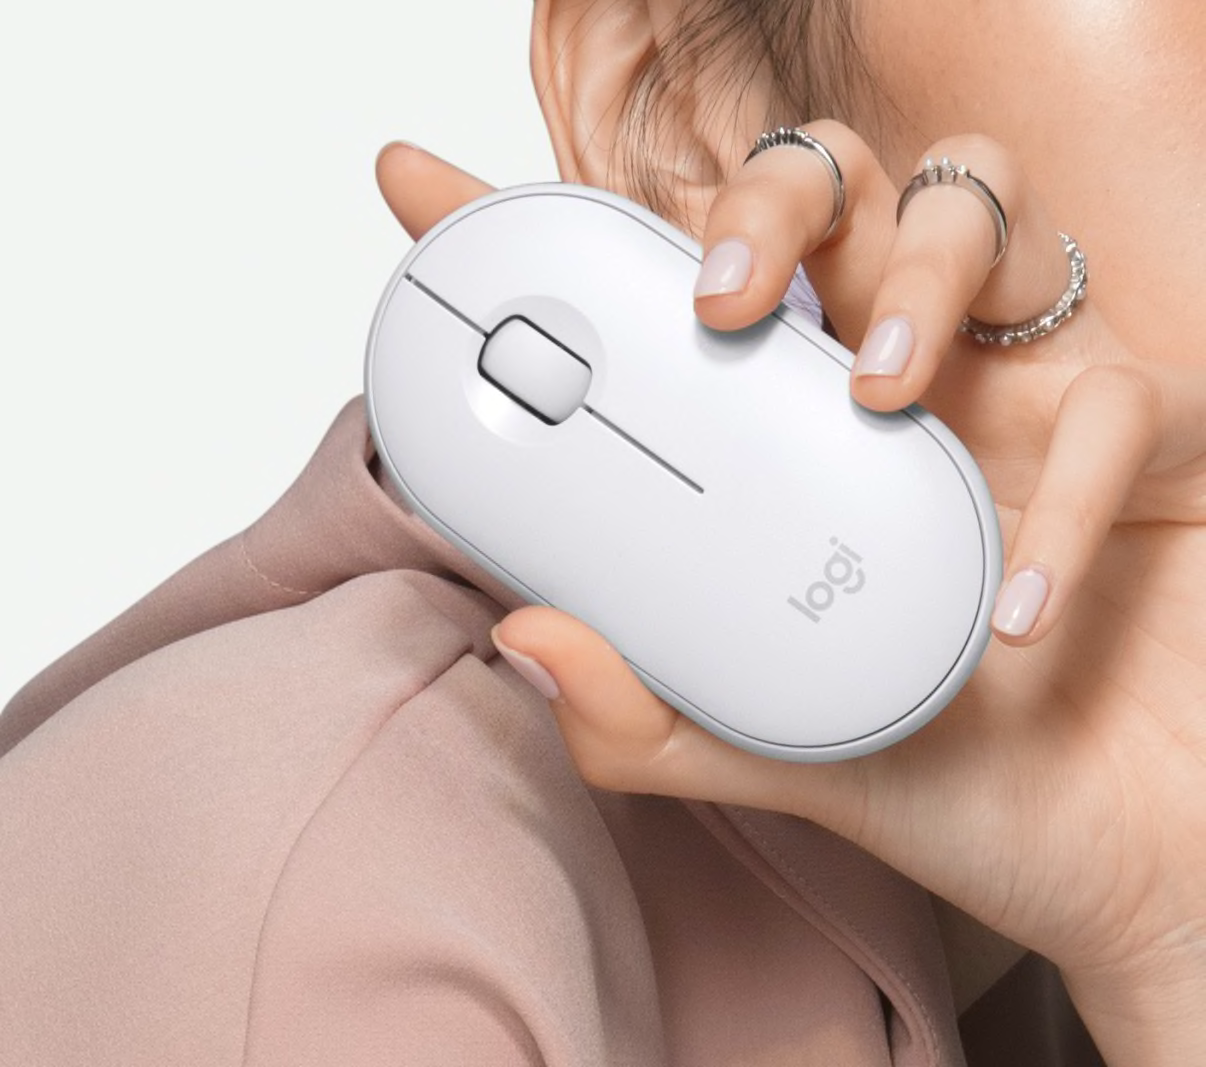 Une personne tenant une souris d’ordinateur blanche